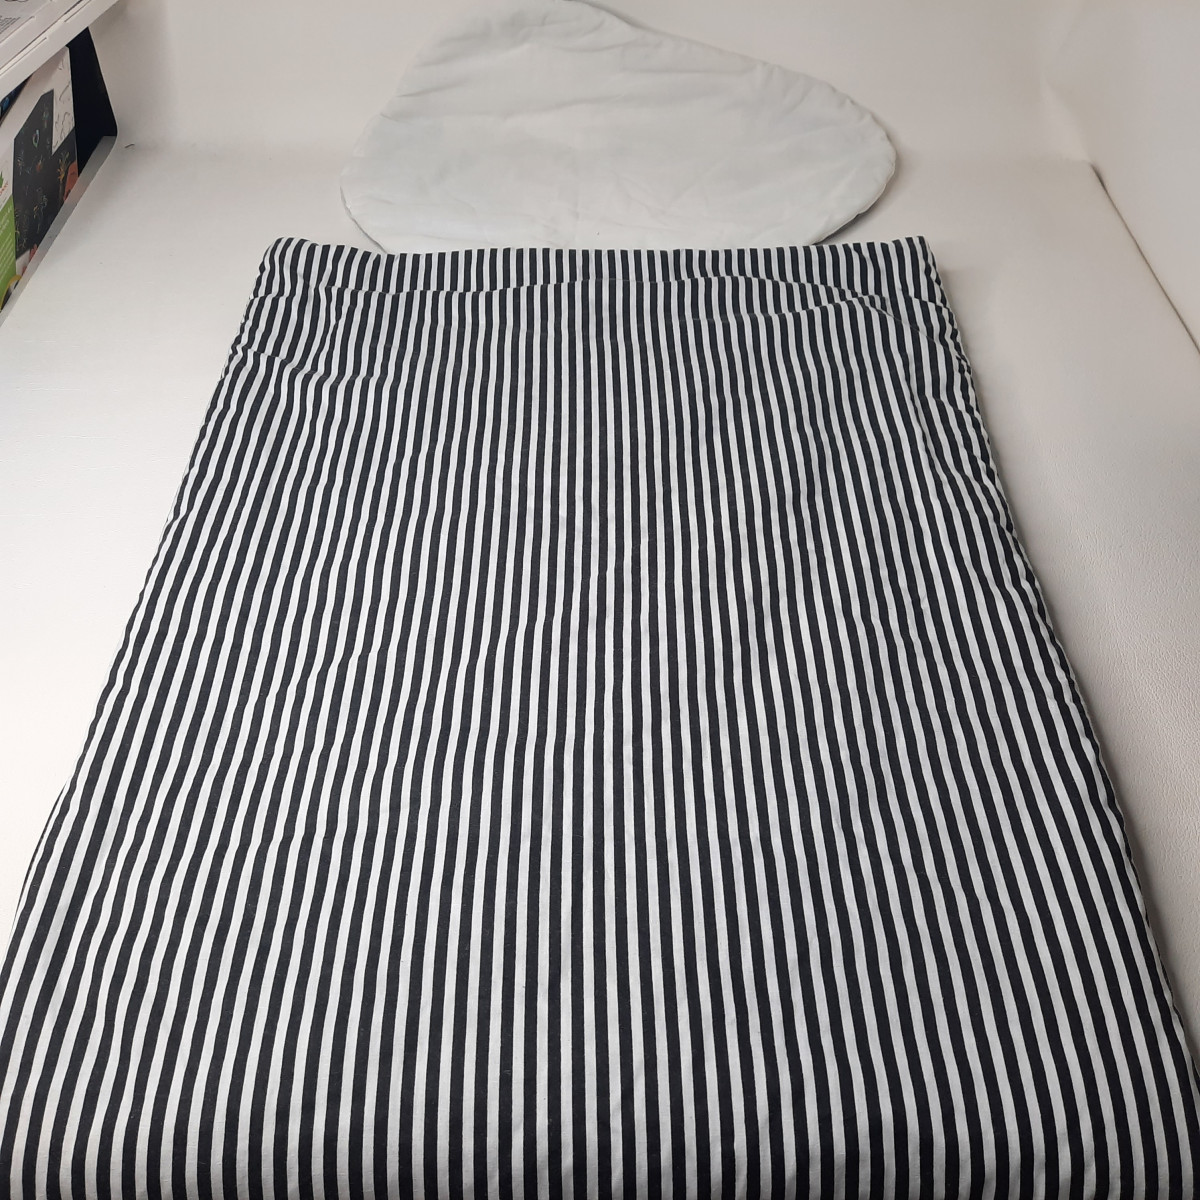 Sac de couchage junior noir ligné blanc - photo 6